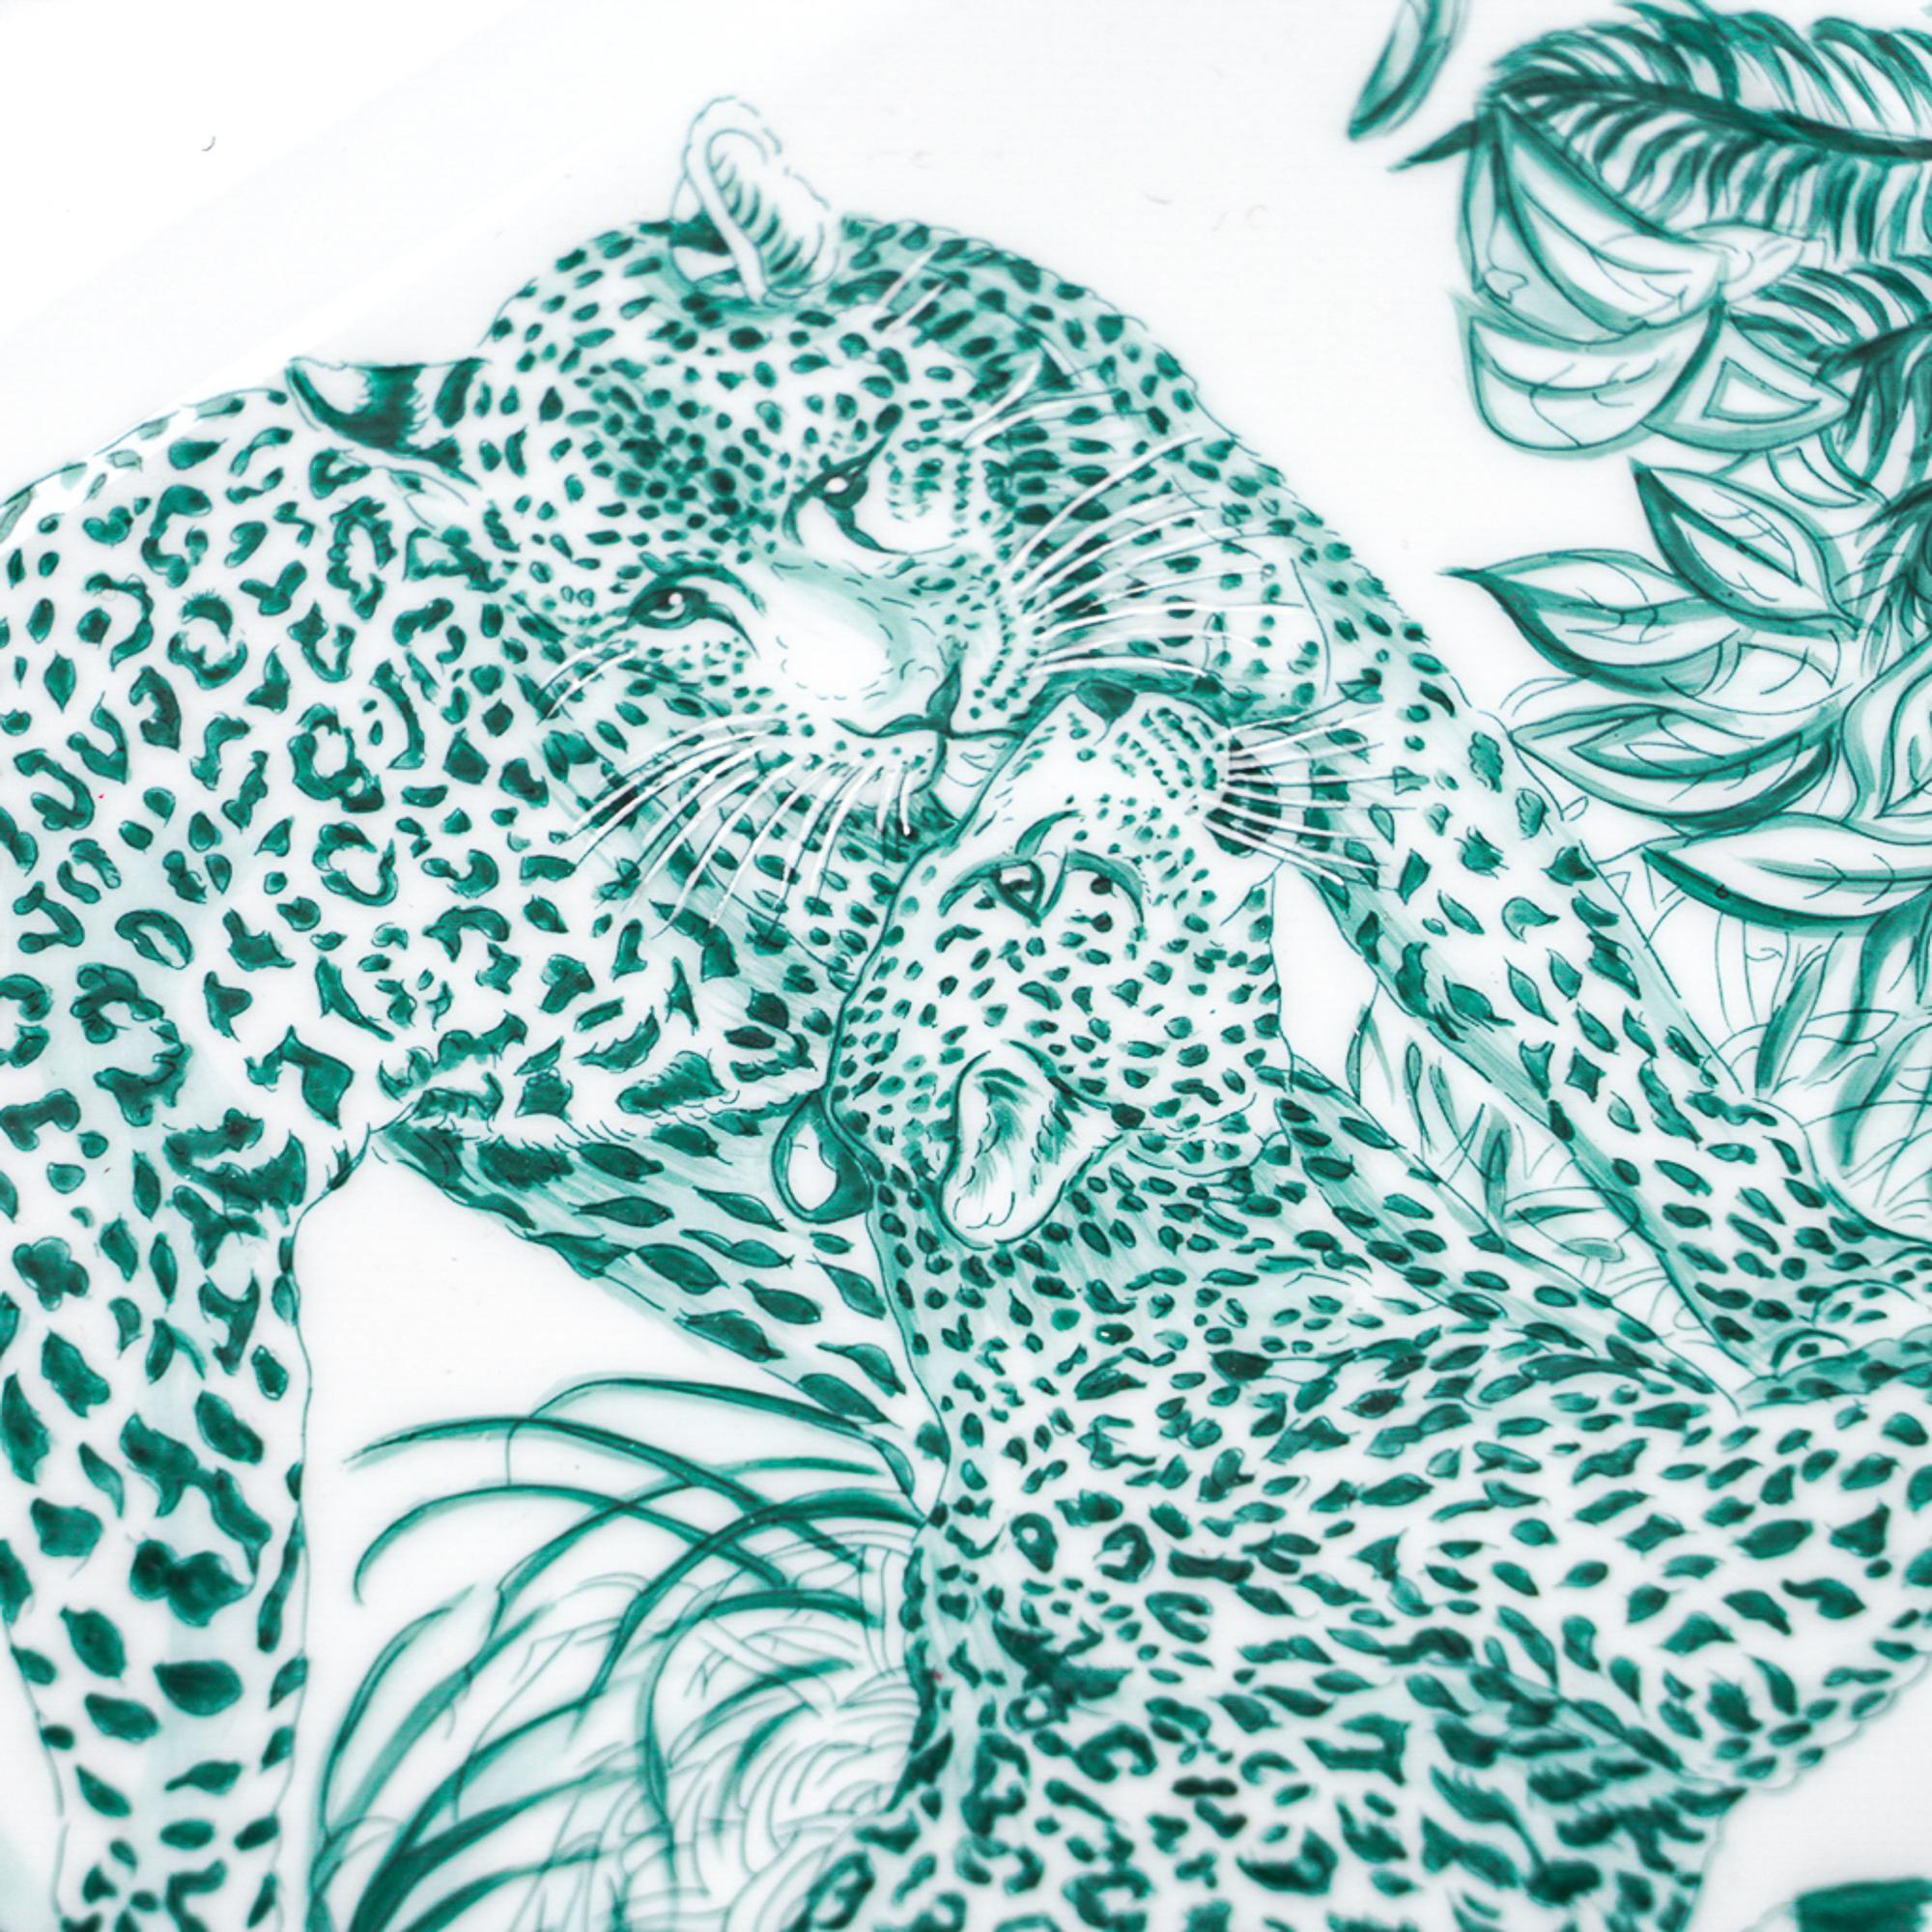 Mightychic bietet ein Hermes Jungle Love Limoges Porzellantablett in Emerald an.
Handbemaltes Porzellan mit handbemaltem Platinbesatz.
Dieser beliebte Druck ist zeitlos und ein begehrtes Sammelobjekt.
Ein perfektes Akzentlicht für jeden